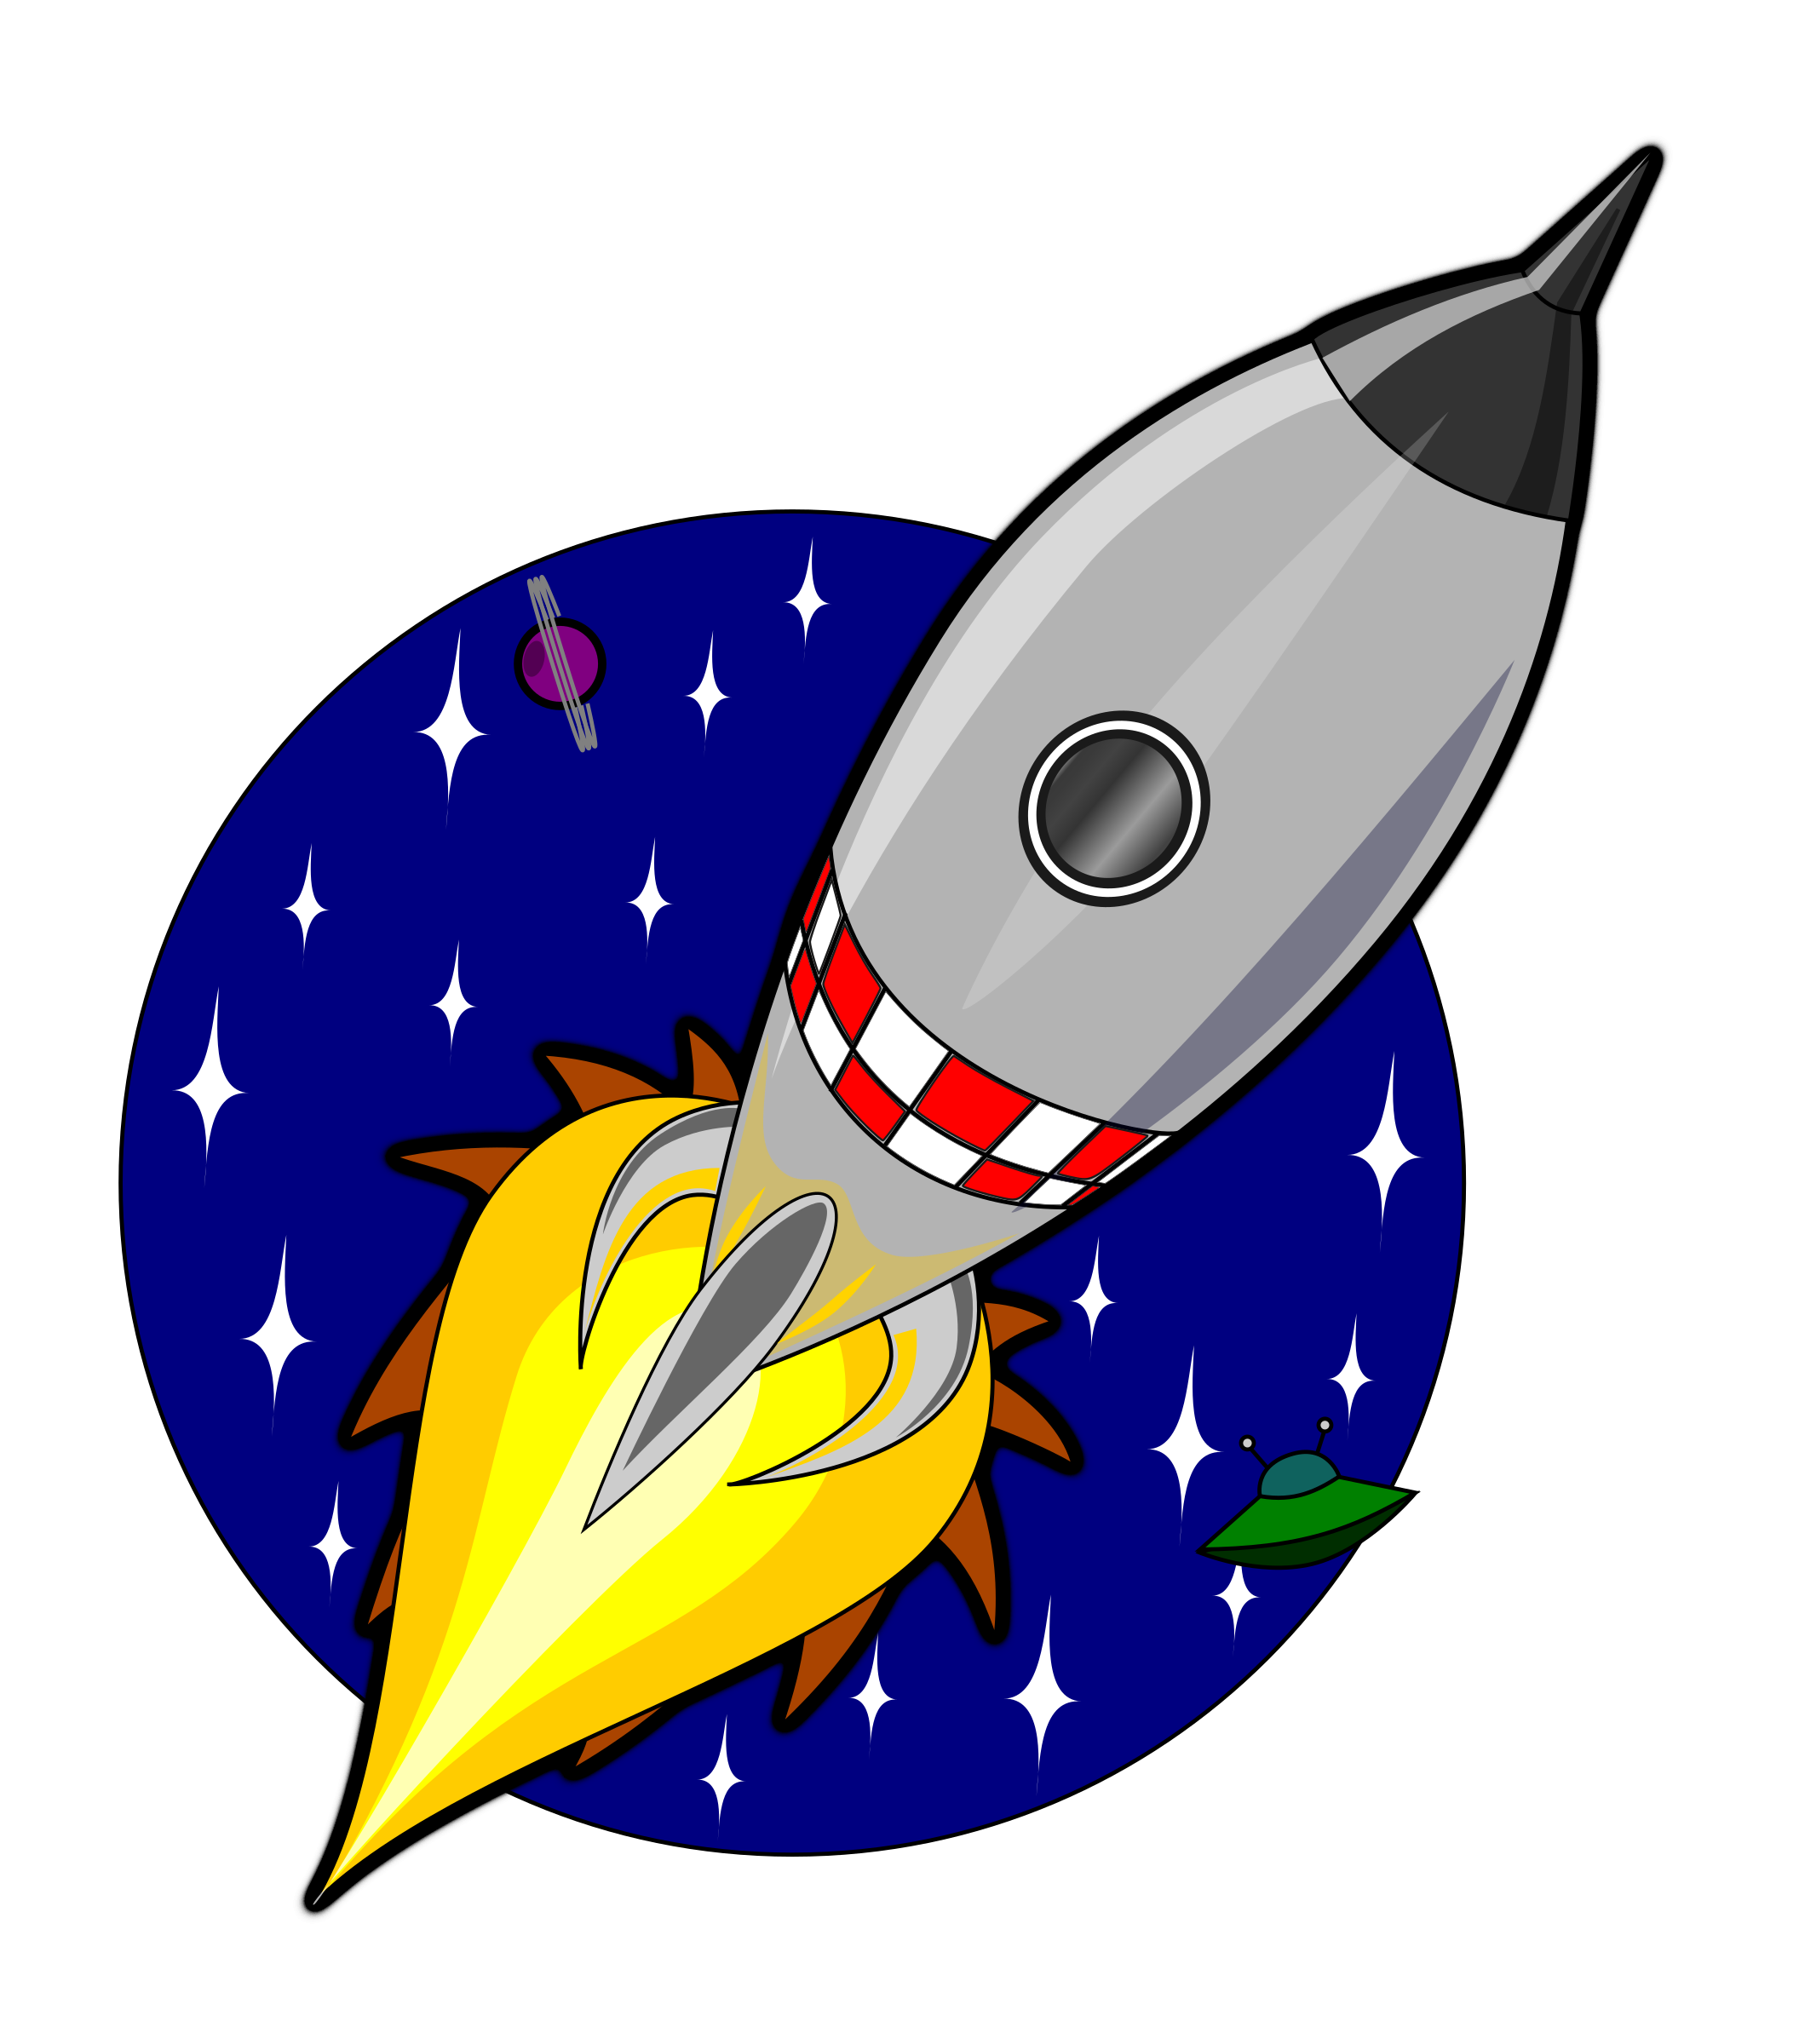 Картинка ракеты для детей цветная. Ракета. Мультяшные ракеты. Ракета для детей. Космическая ракета для детей.